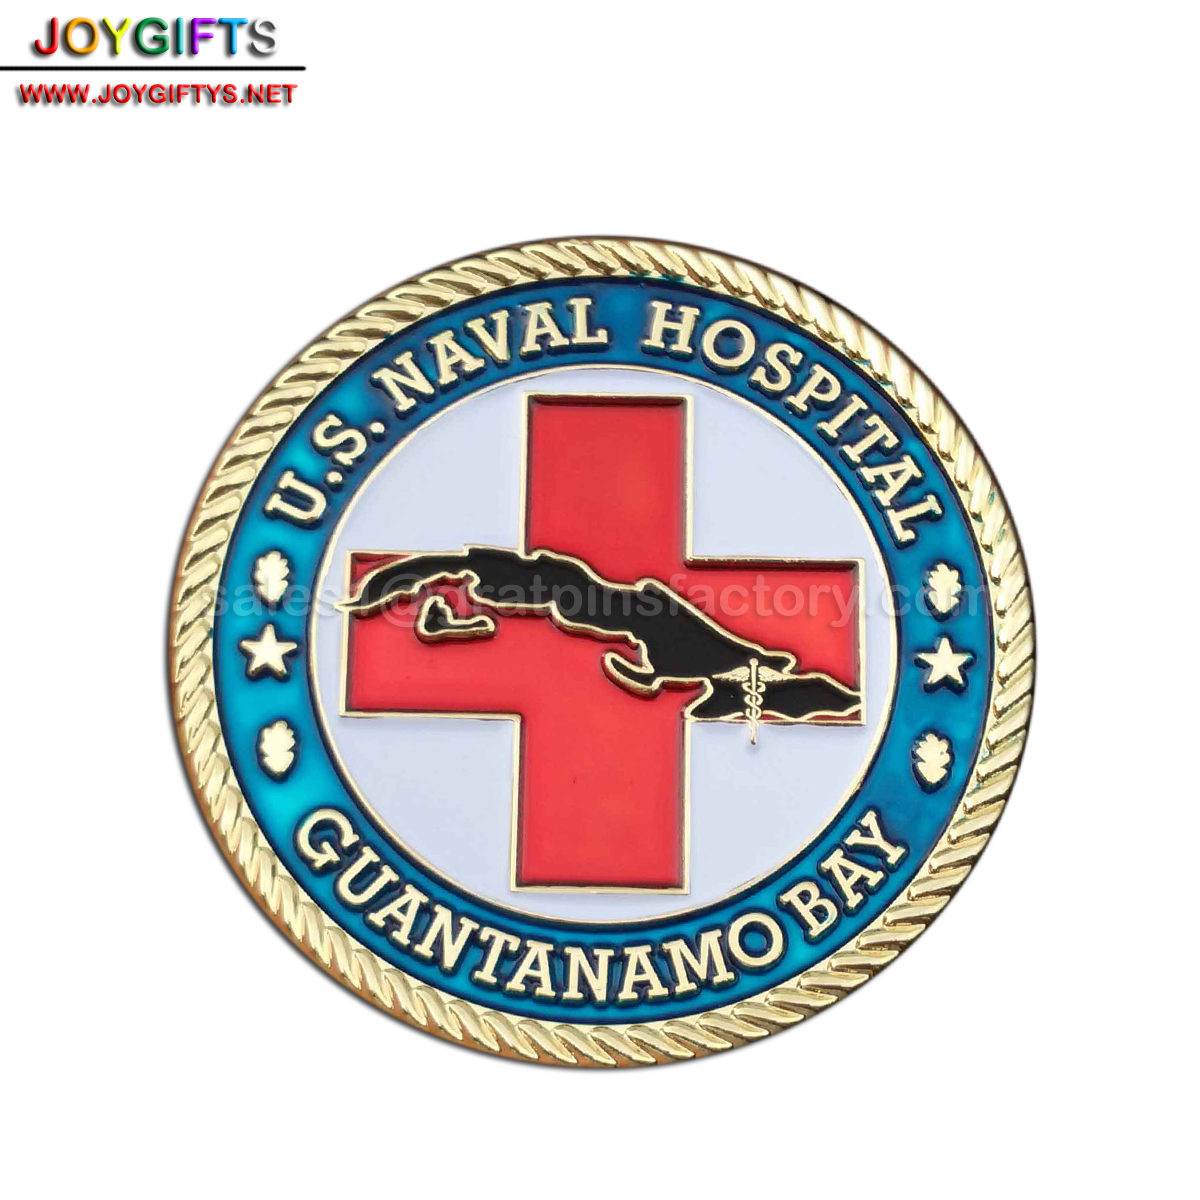 Naval hospital coin